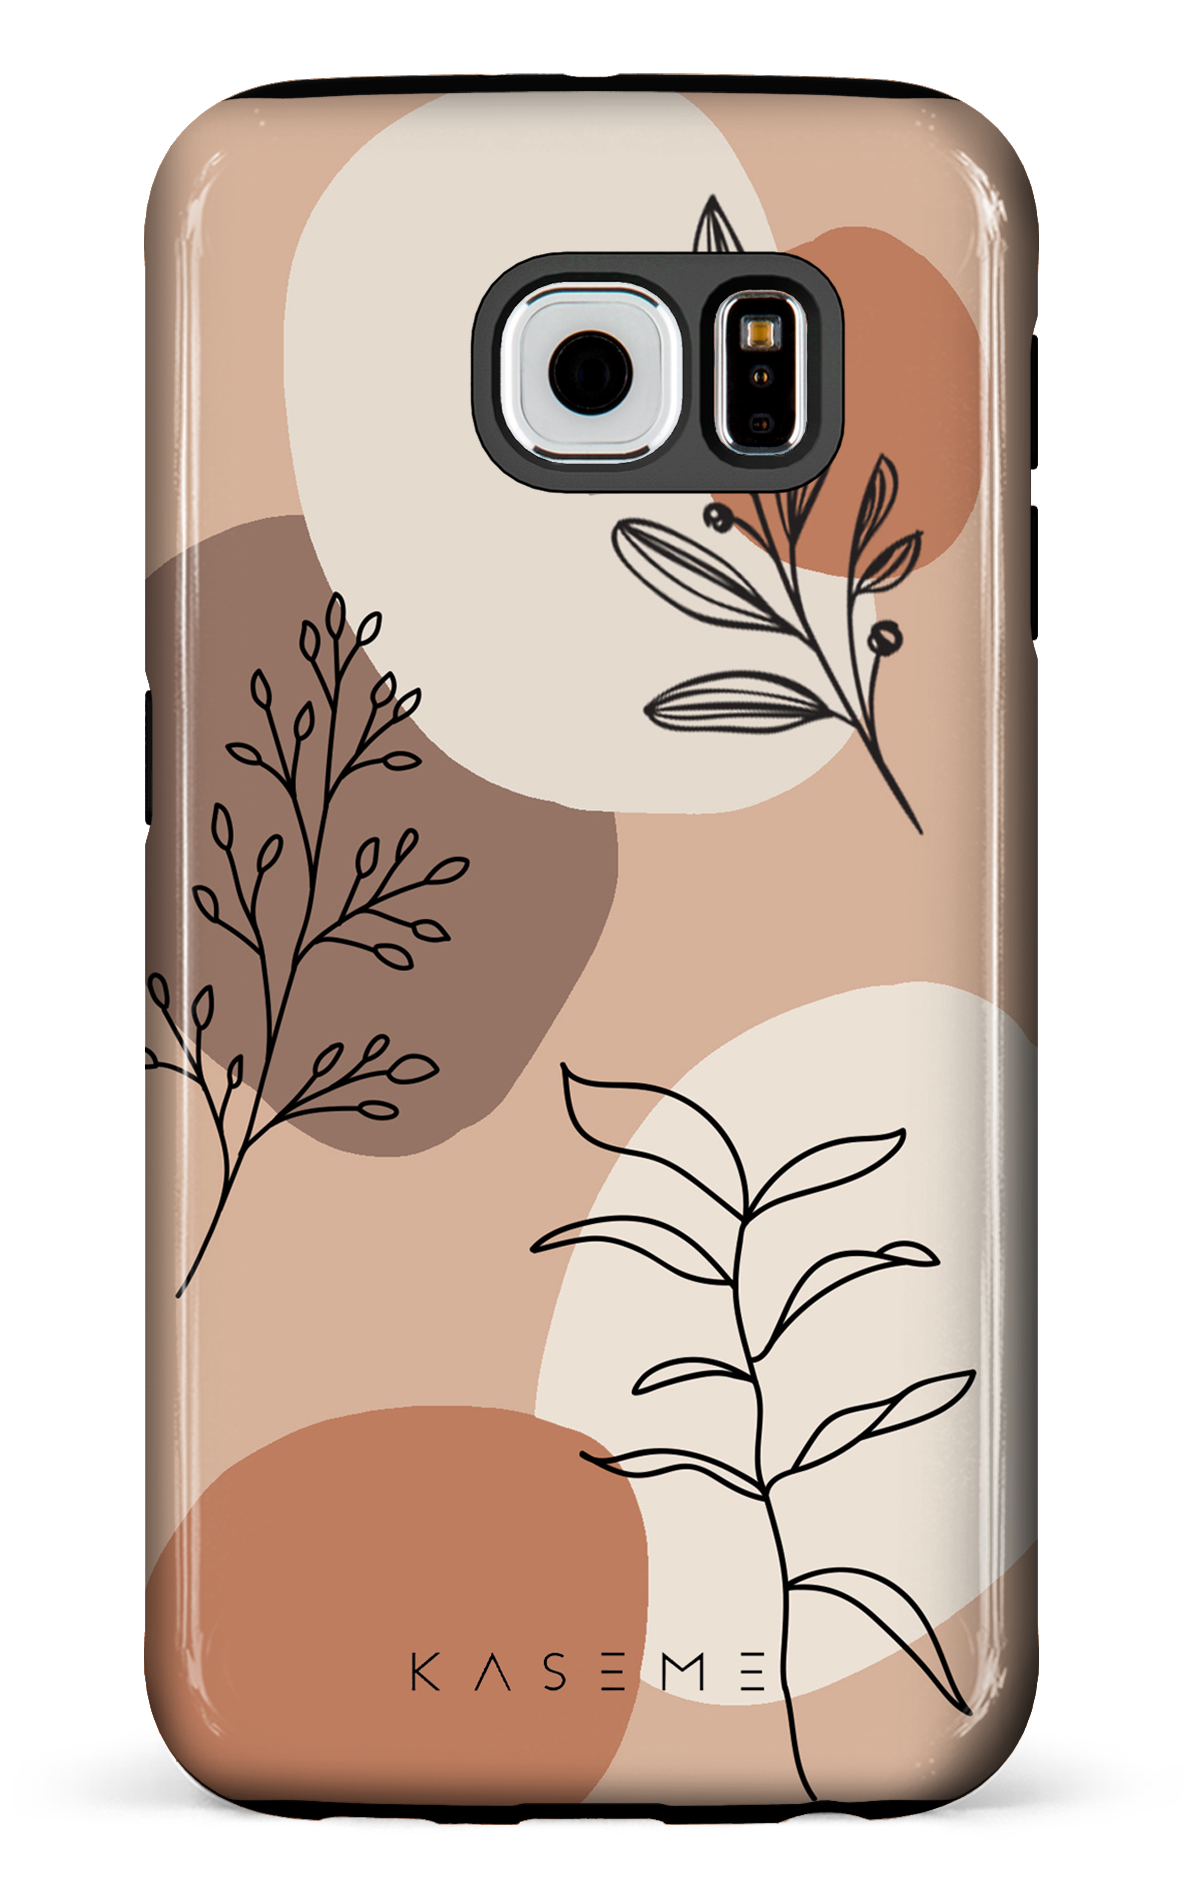 Almond - Galaxy S6